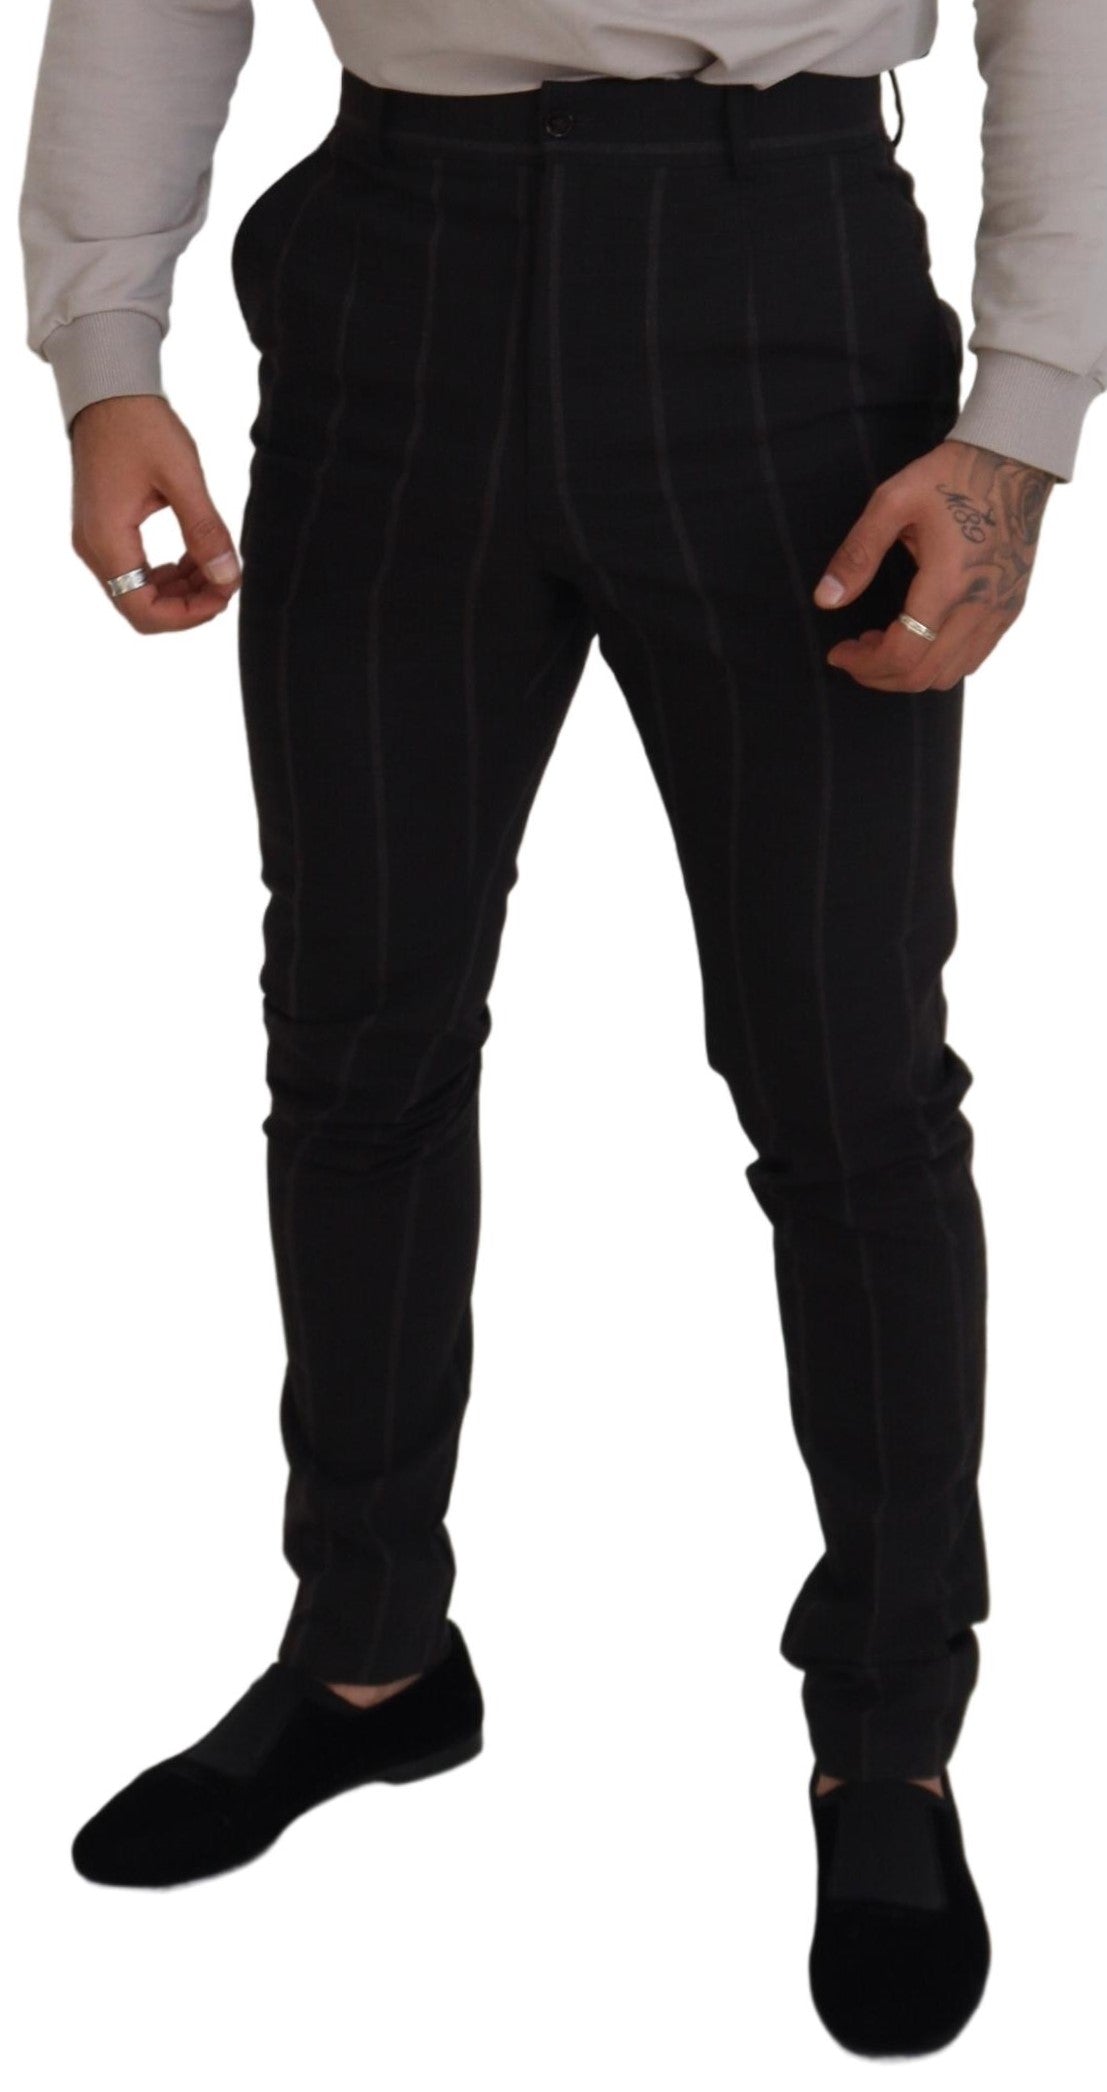 Официални мъжки панталони Dolce &amp; Gabbana, черни вълнени чино